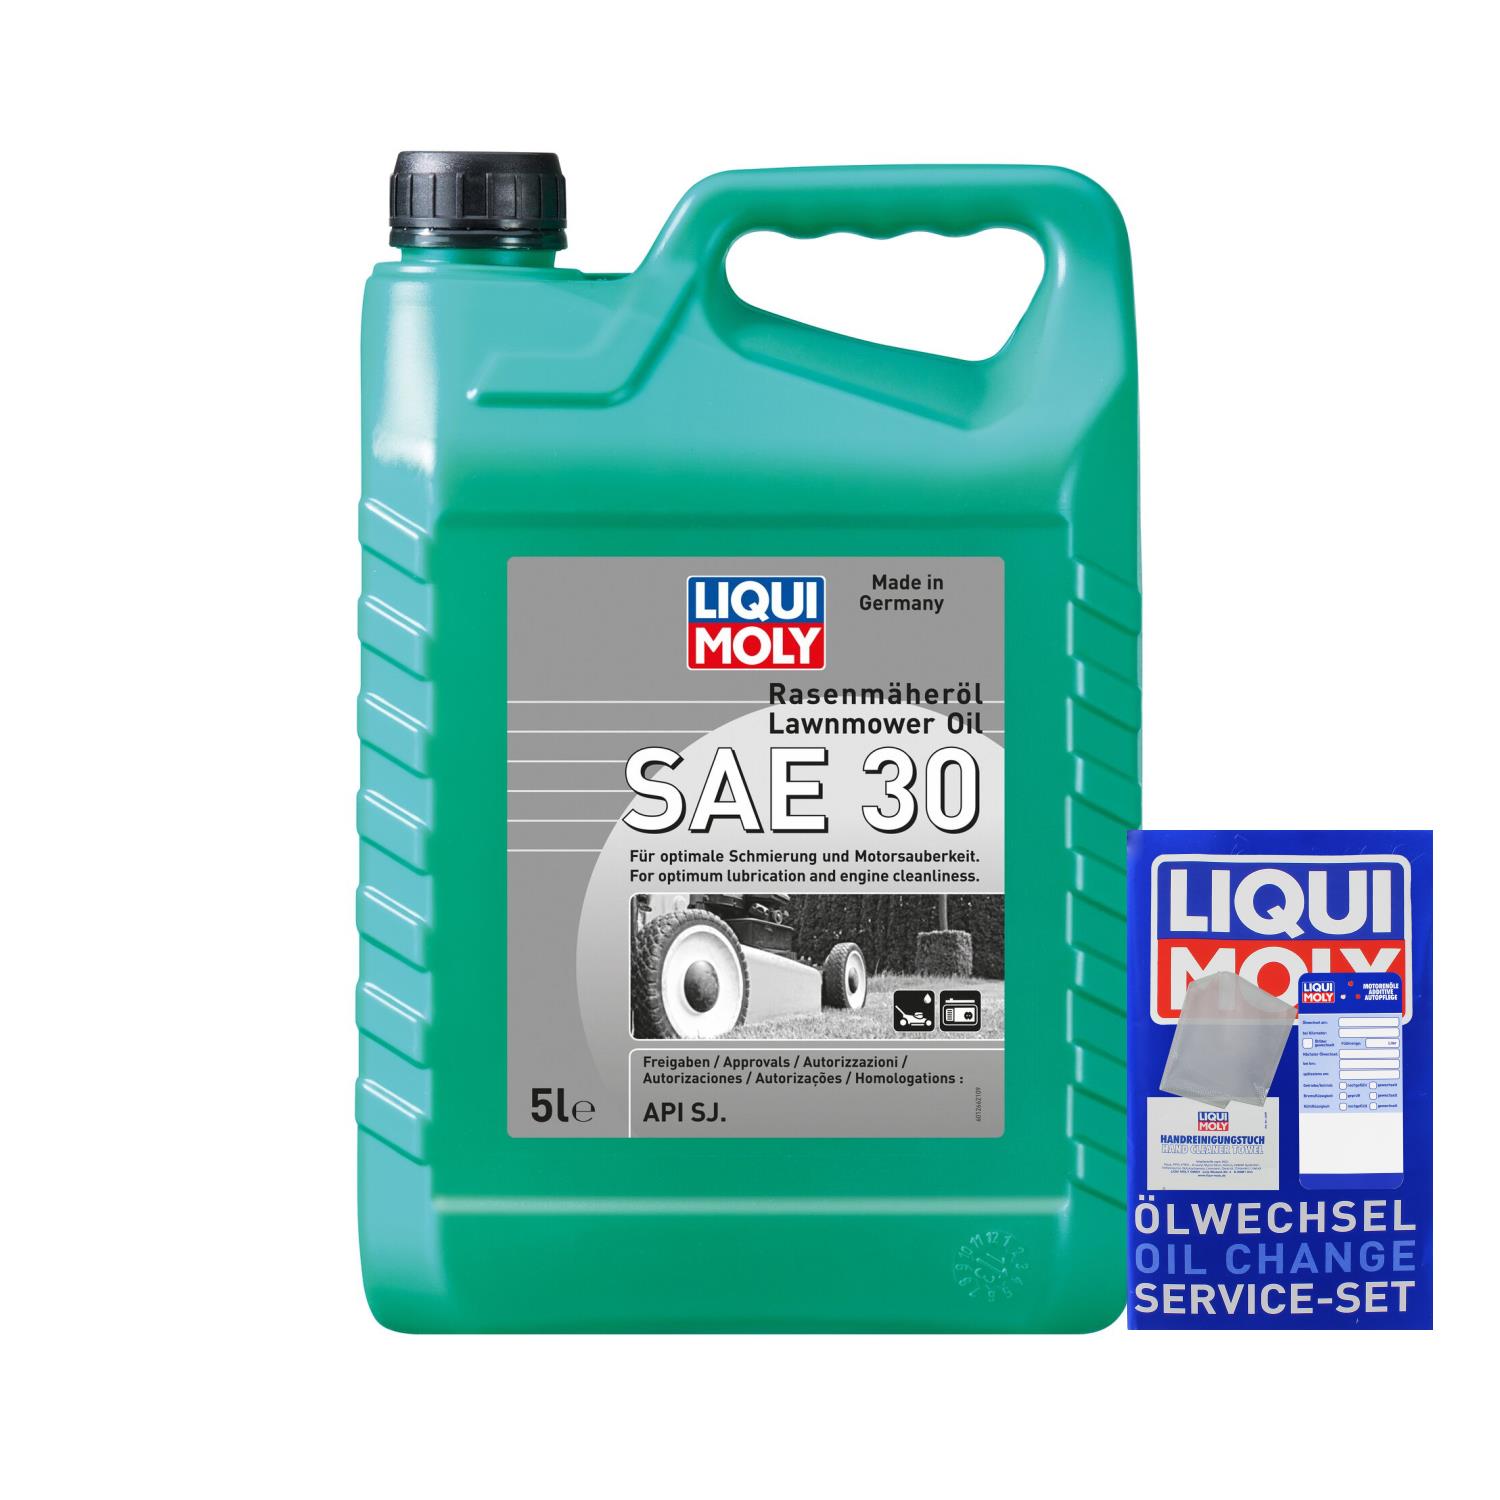 5 Liter LIQUI MOLY Rasenmäher-Öl SAE 30 4Takt Motoröl Rasenmäheröl API SG